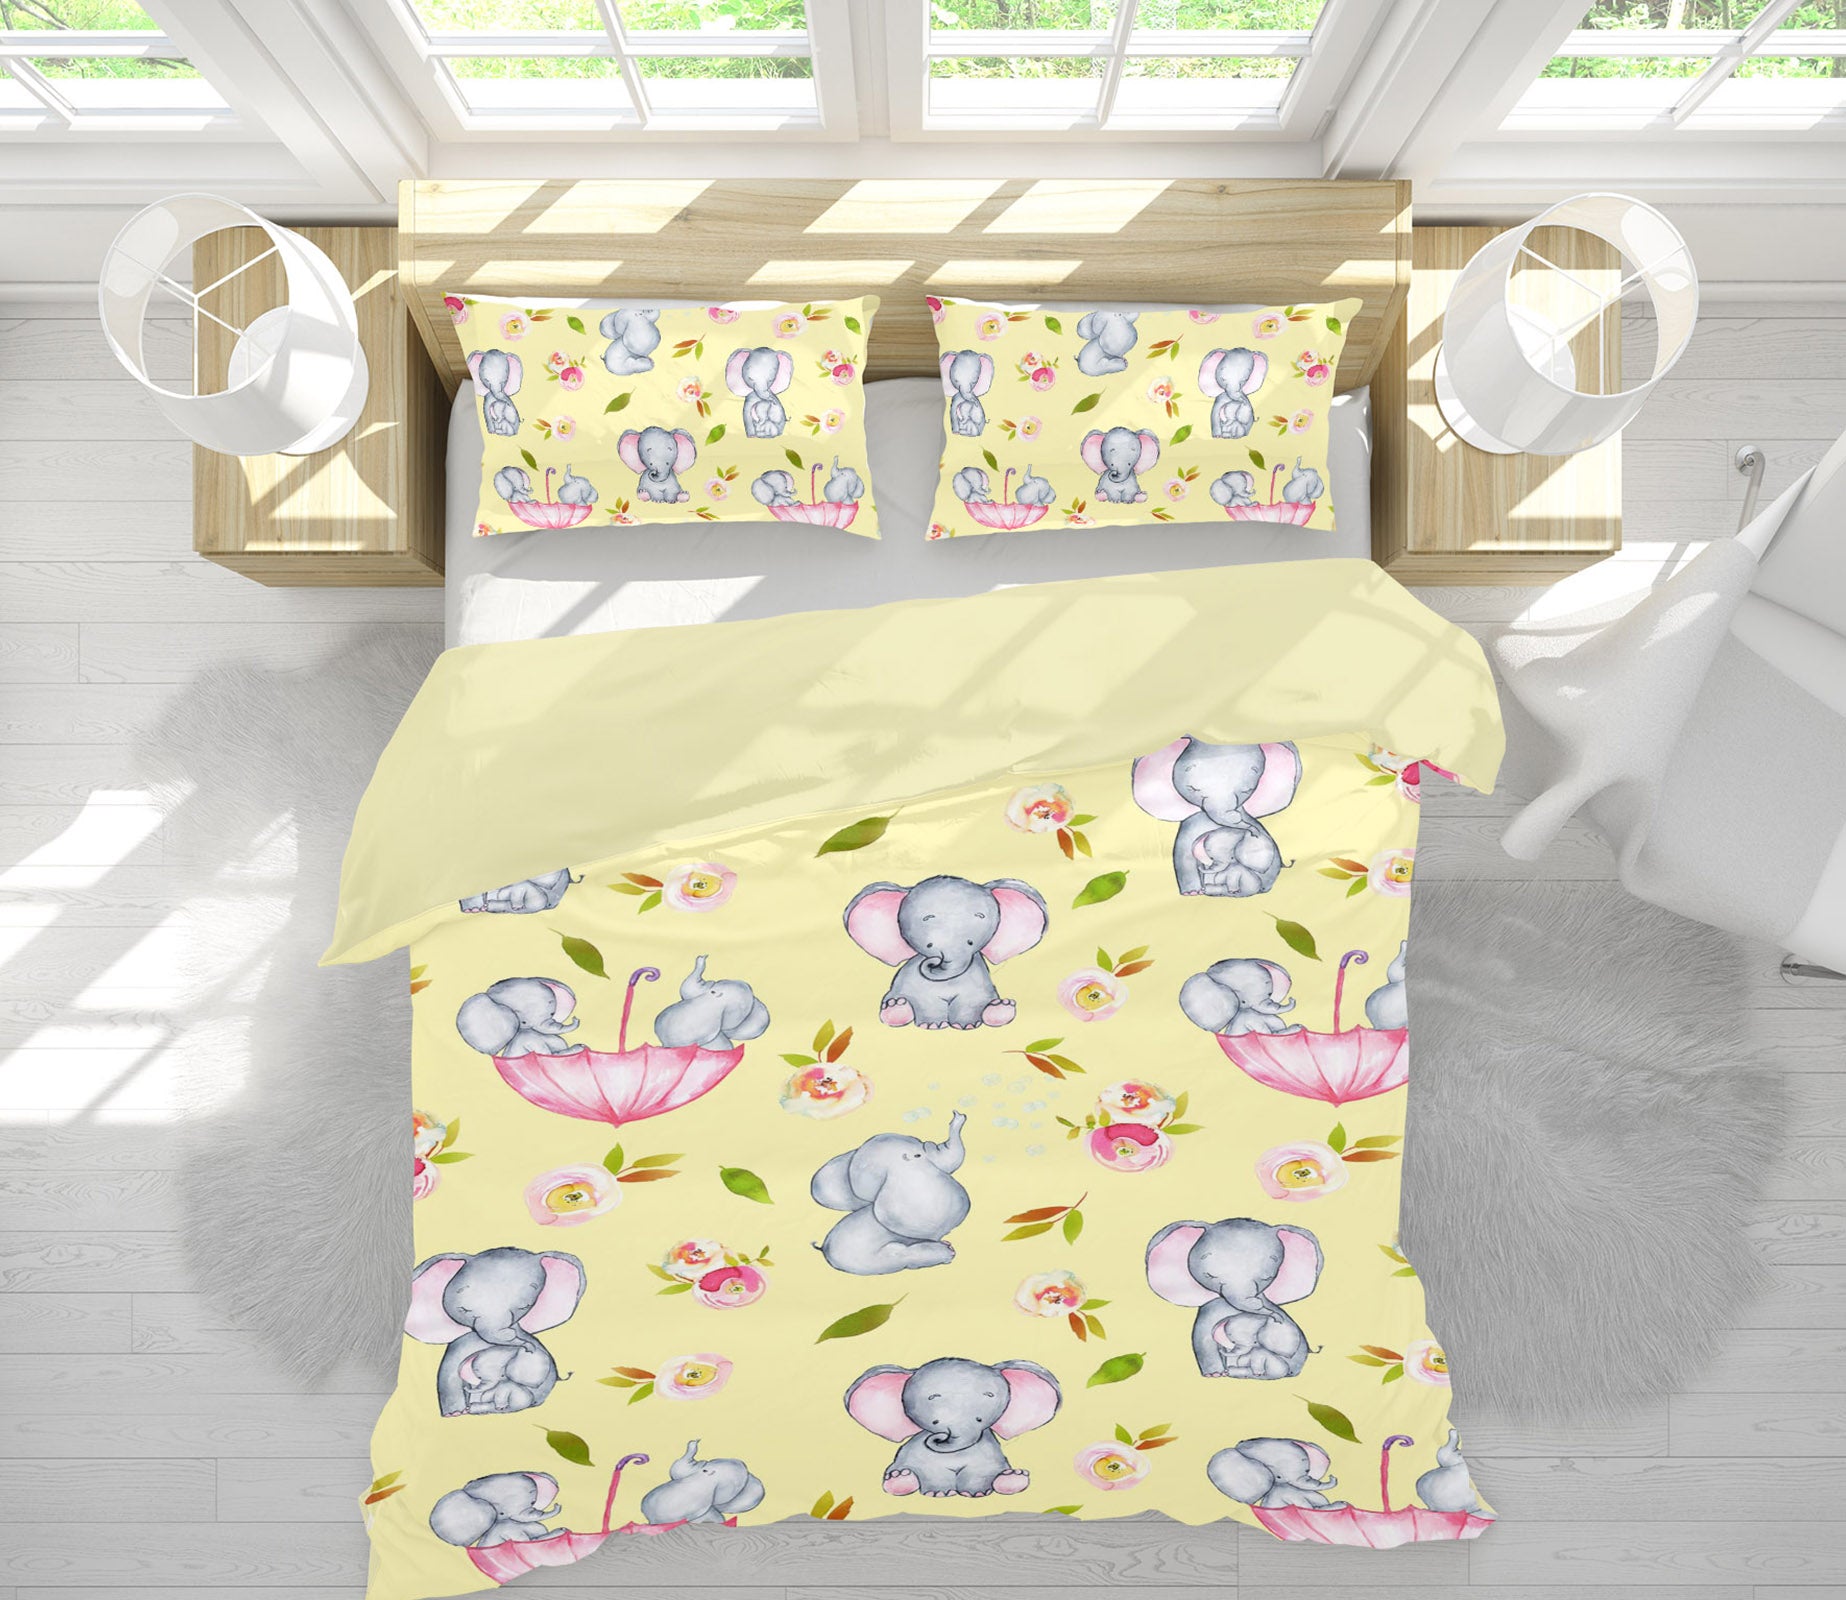 3D Yellow Elephant 223 Uta Naumann Bedding Bed Pillowcases Quilt